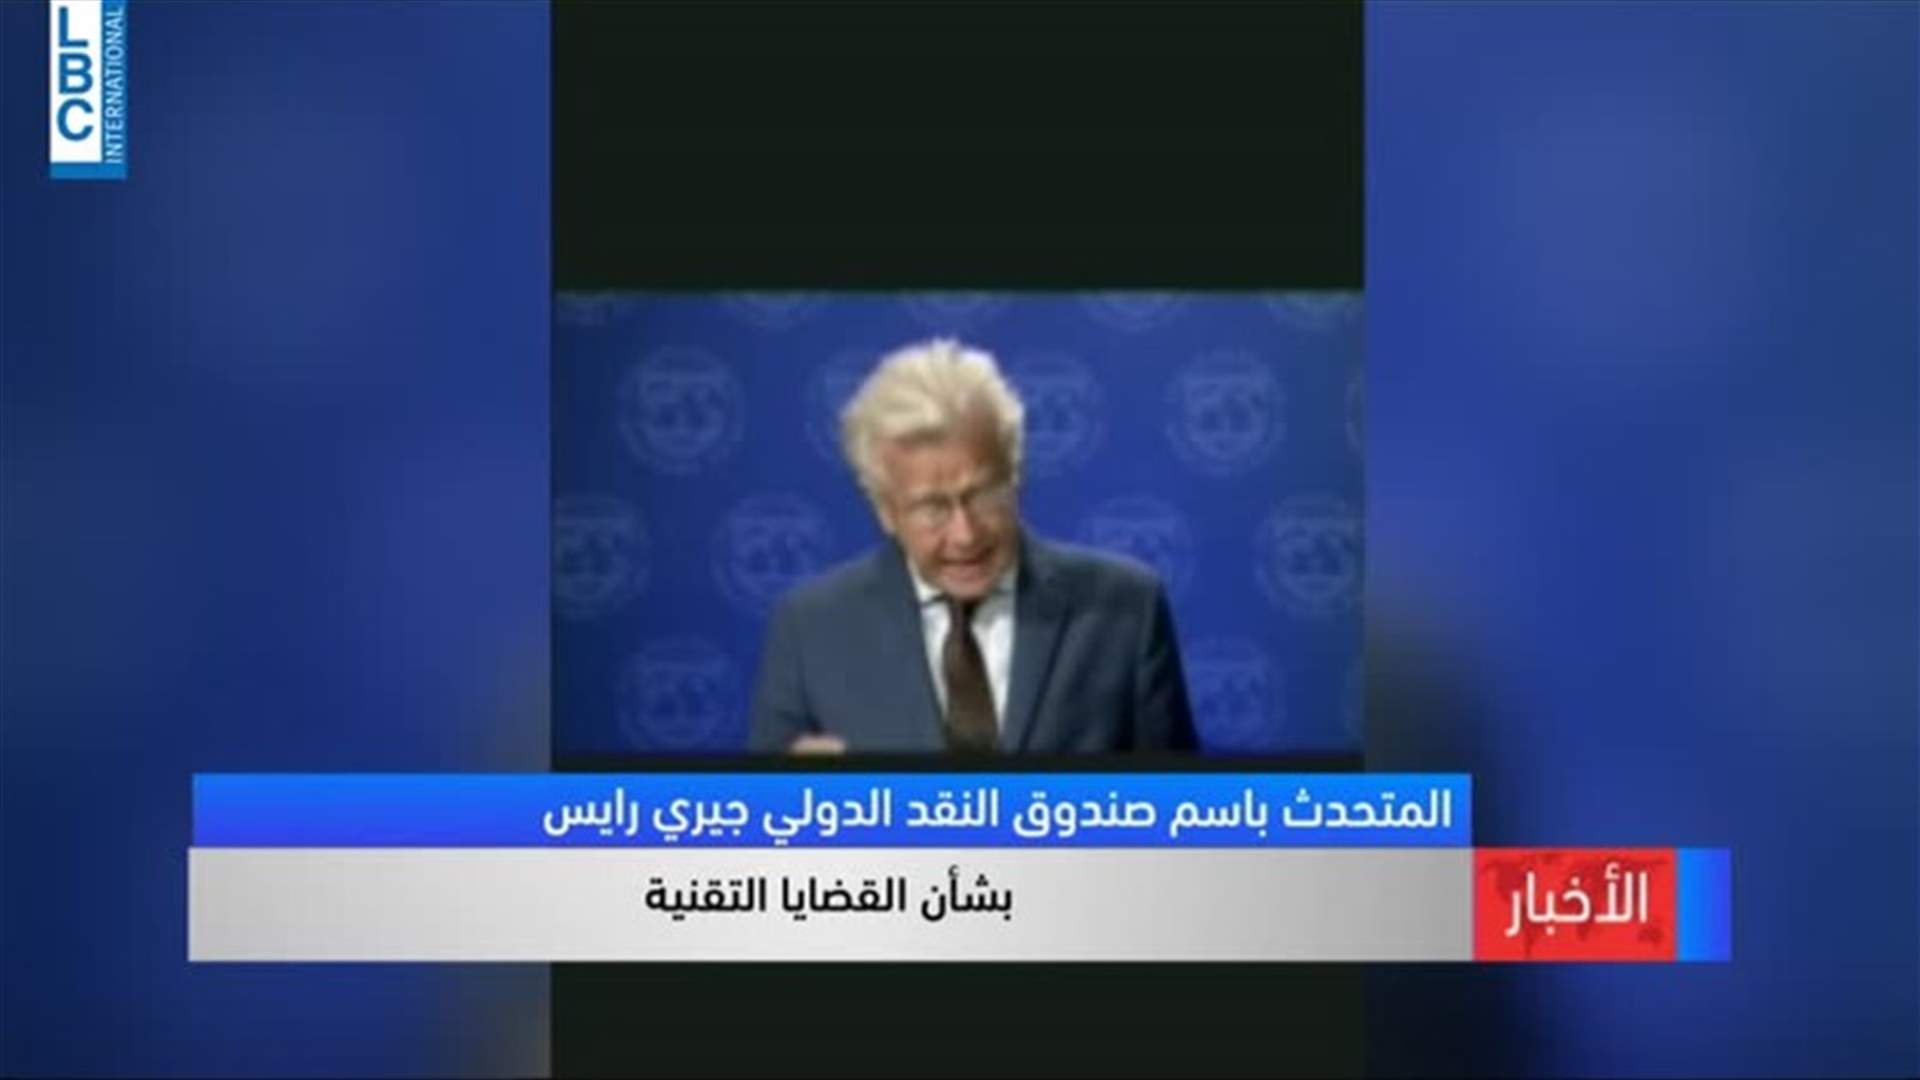 المتحدث باسم صندوق النقد الدولي: حاضرون للتواصل مع الحكومة اللبنانية المقبلة